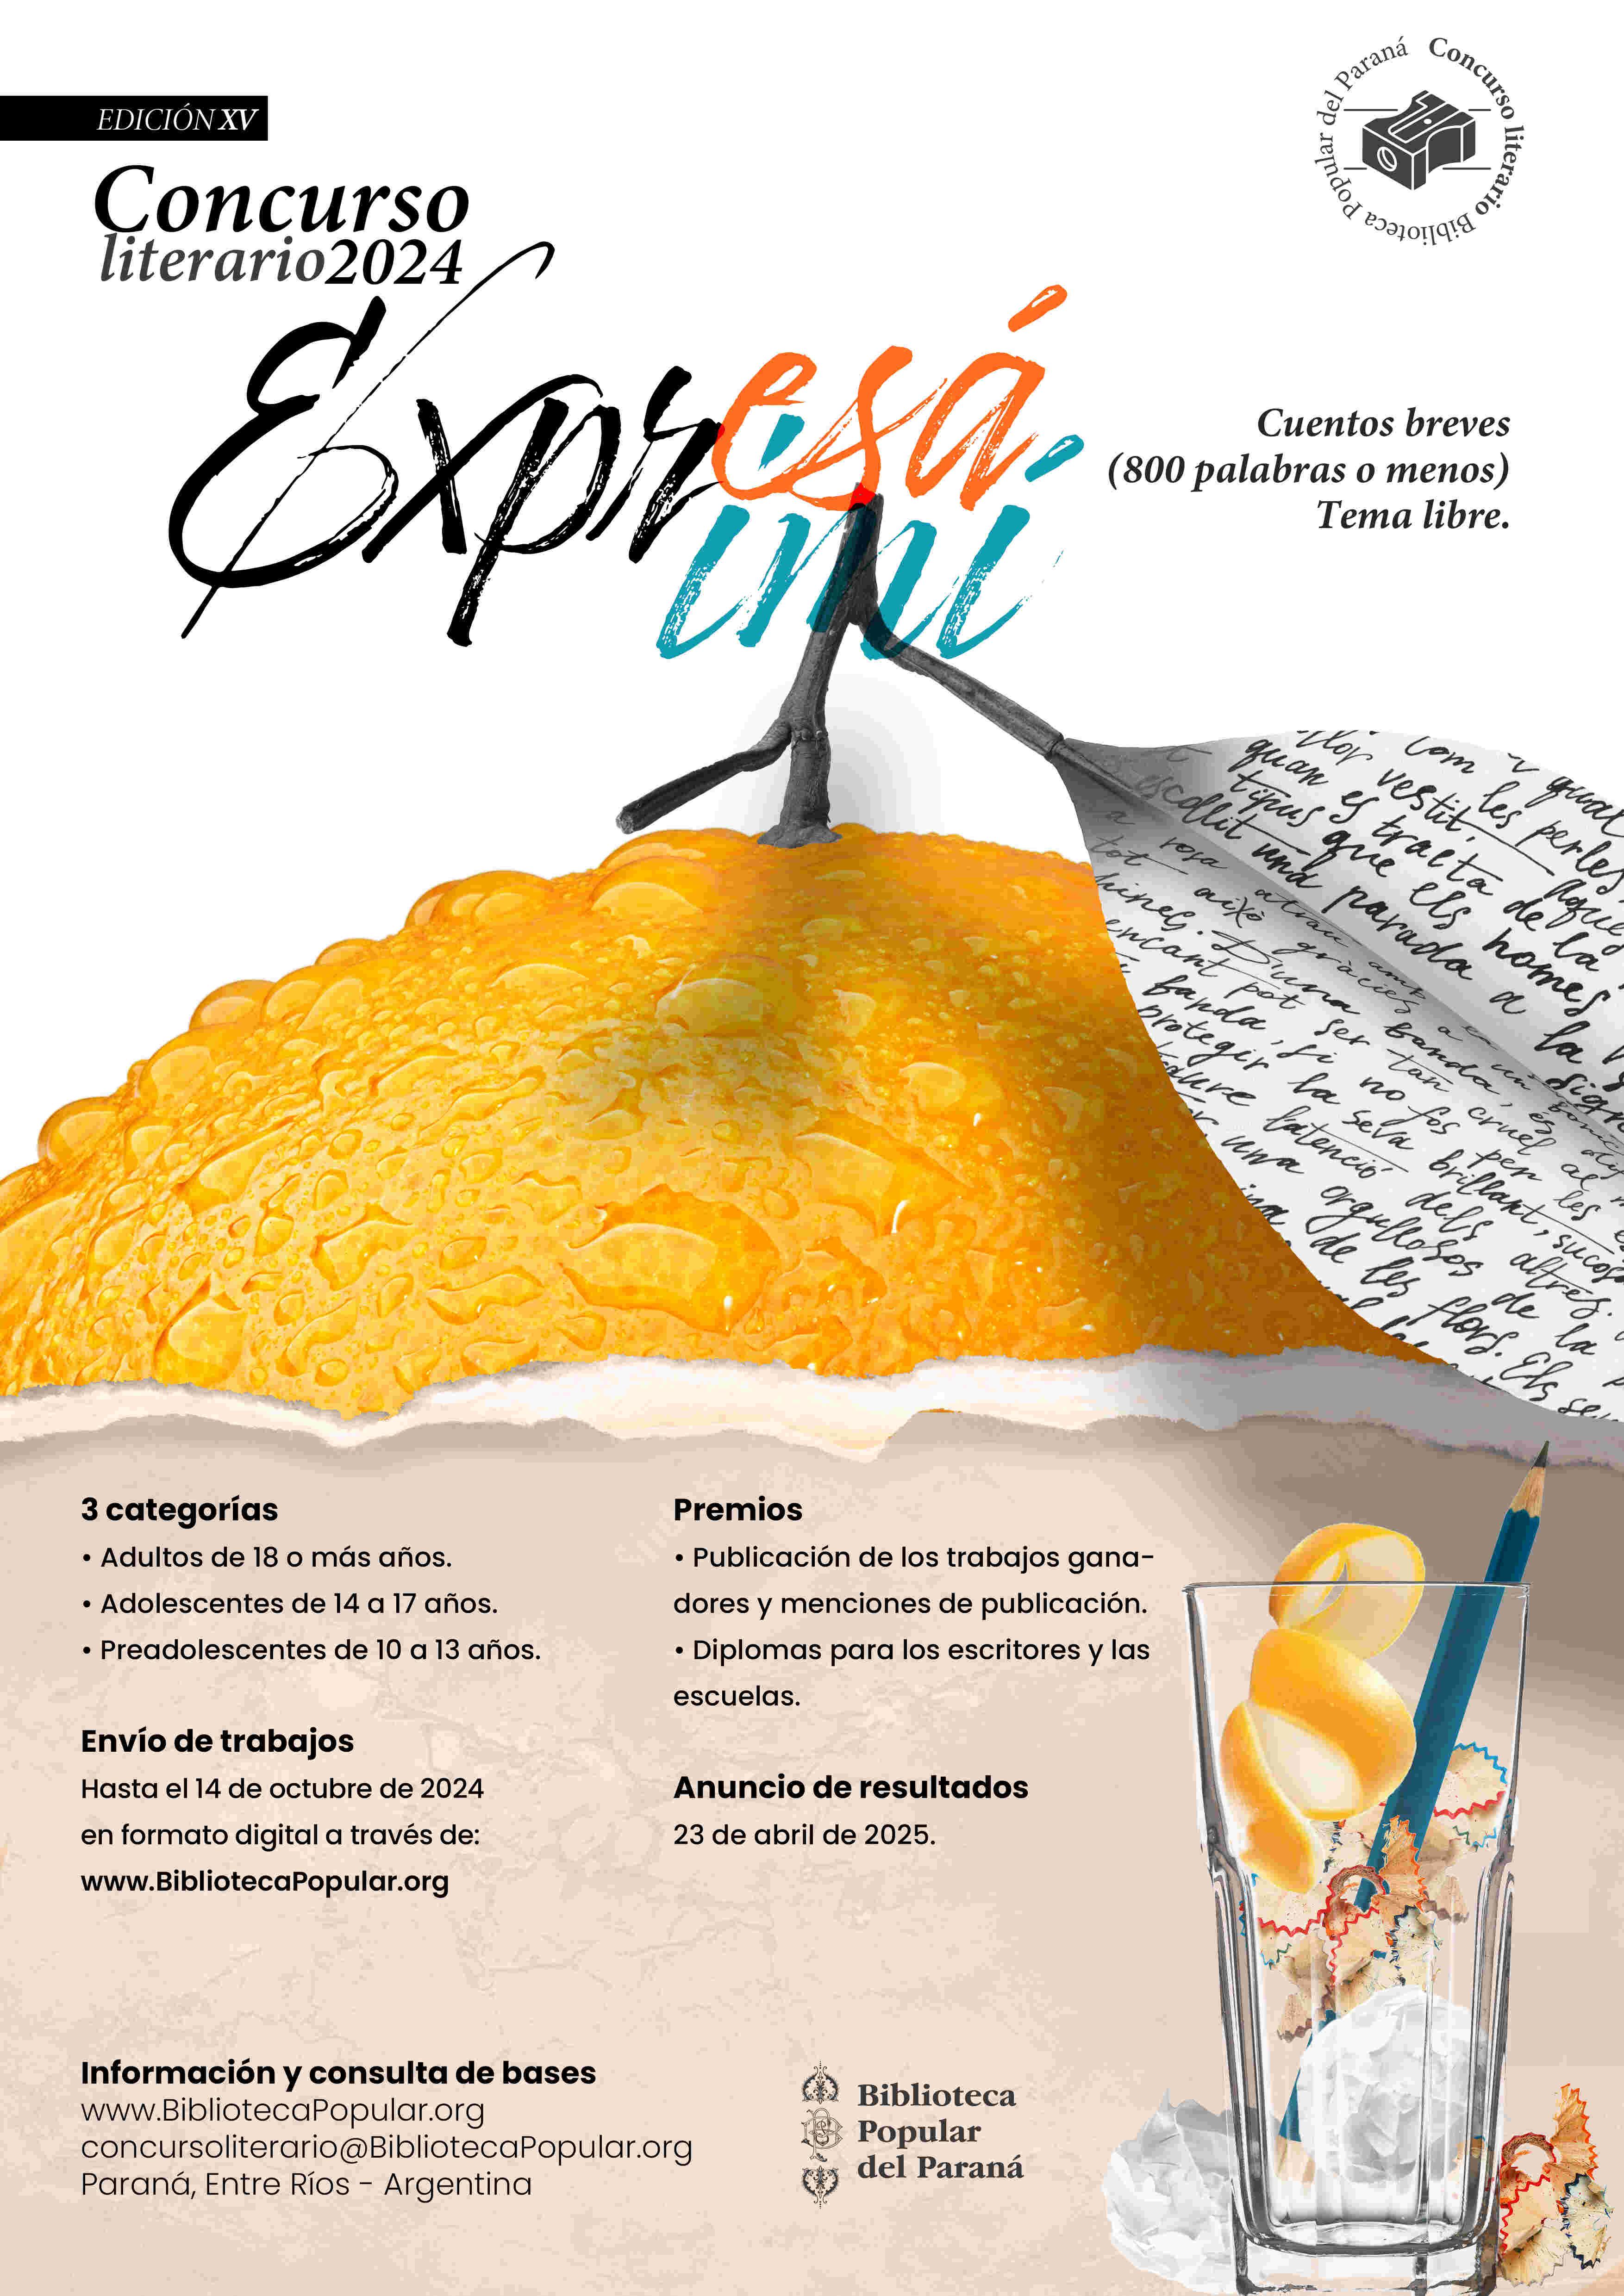 Afiche promocional del Concurso Biblioteca Popular del Paraná, Edición 2024